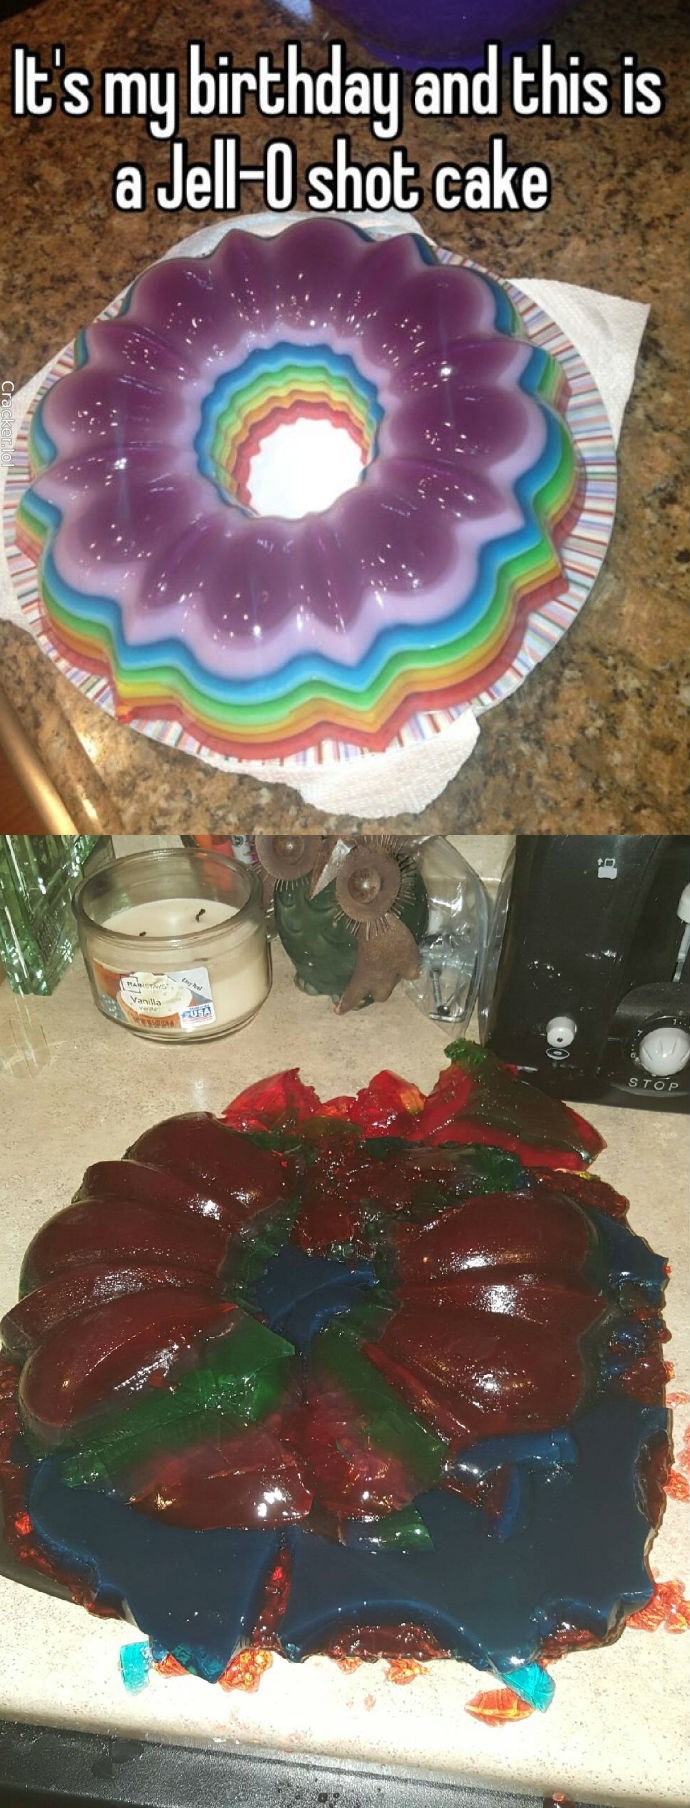 funny fail image jello shot cake 